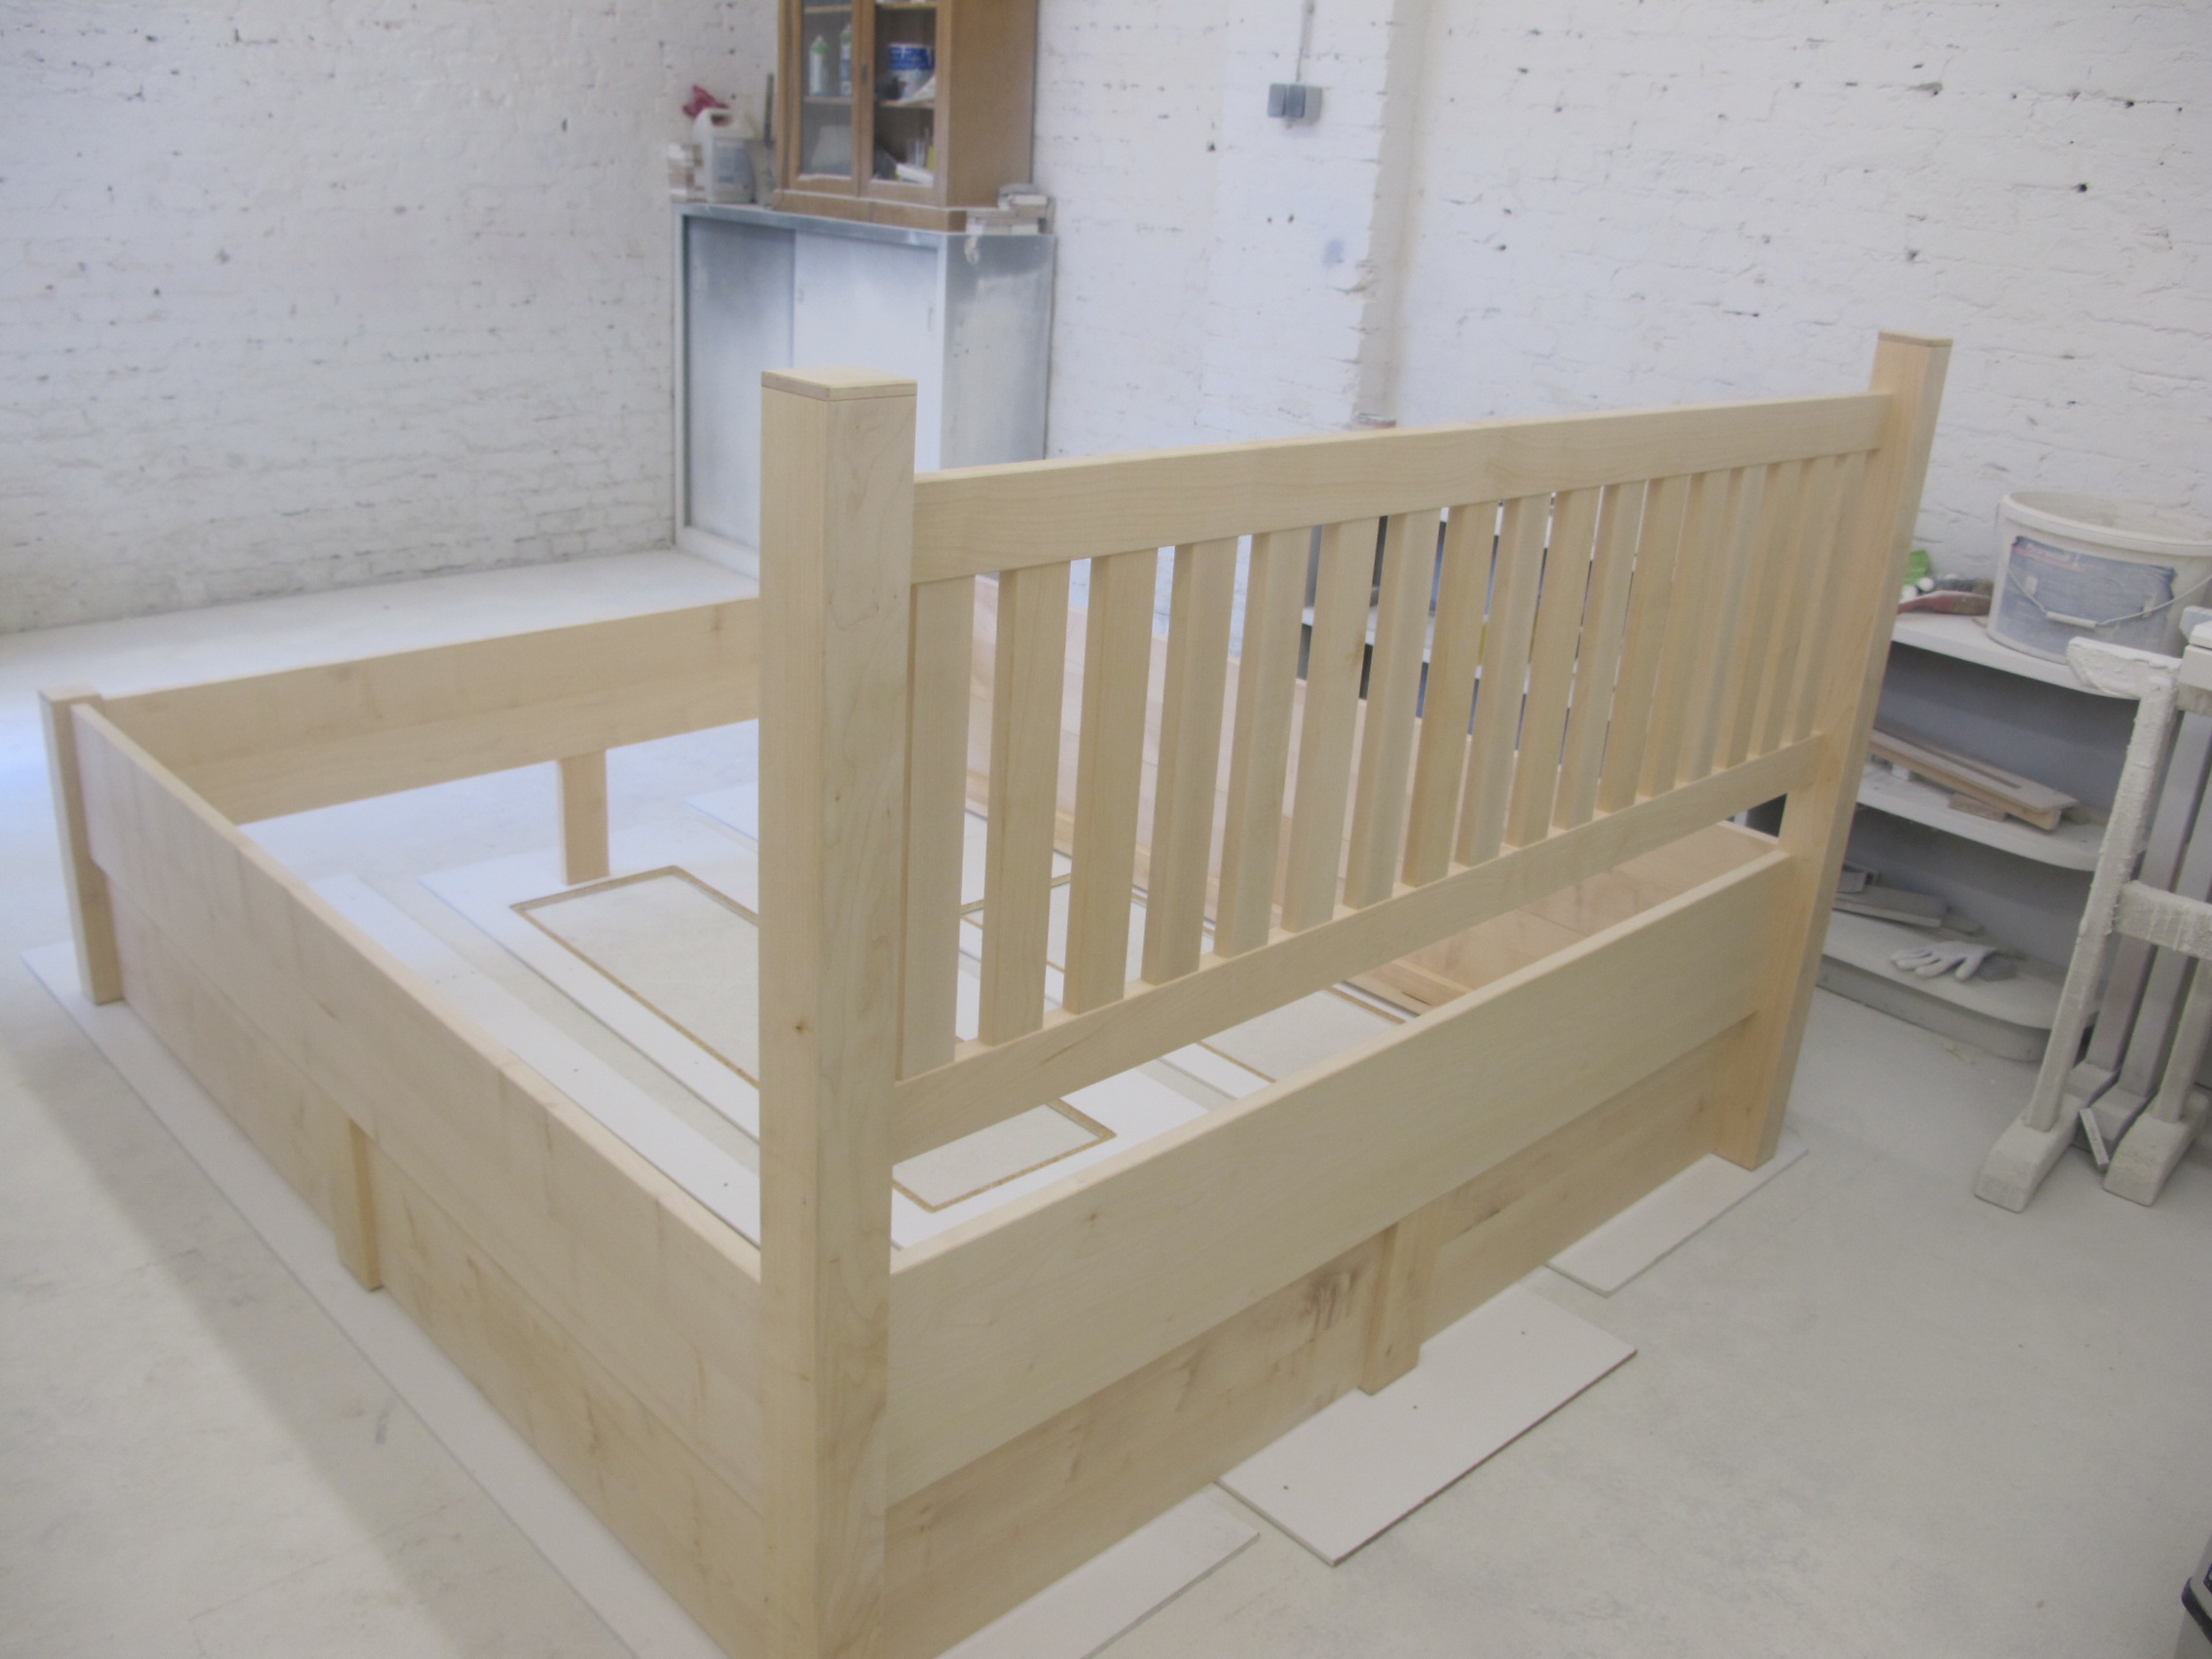 Furniture Manufacturing By Tischlerei Janssen Your Quality